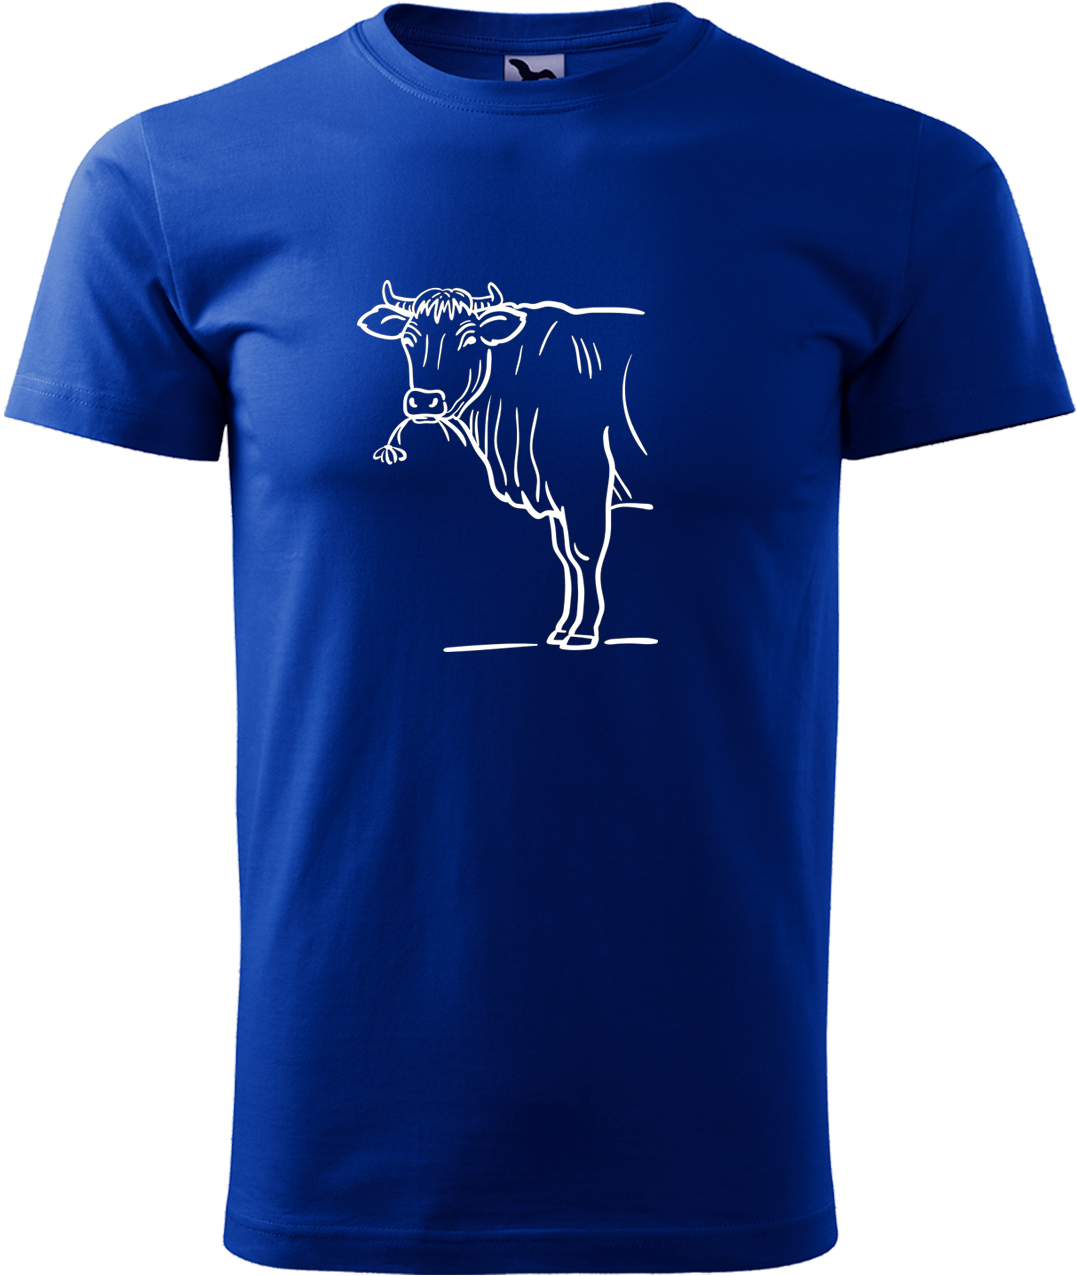 Pánské tričko s krávou - Býk Velikost: M, Barva: Královská modrá (05), Střih: pánský